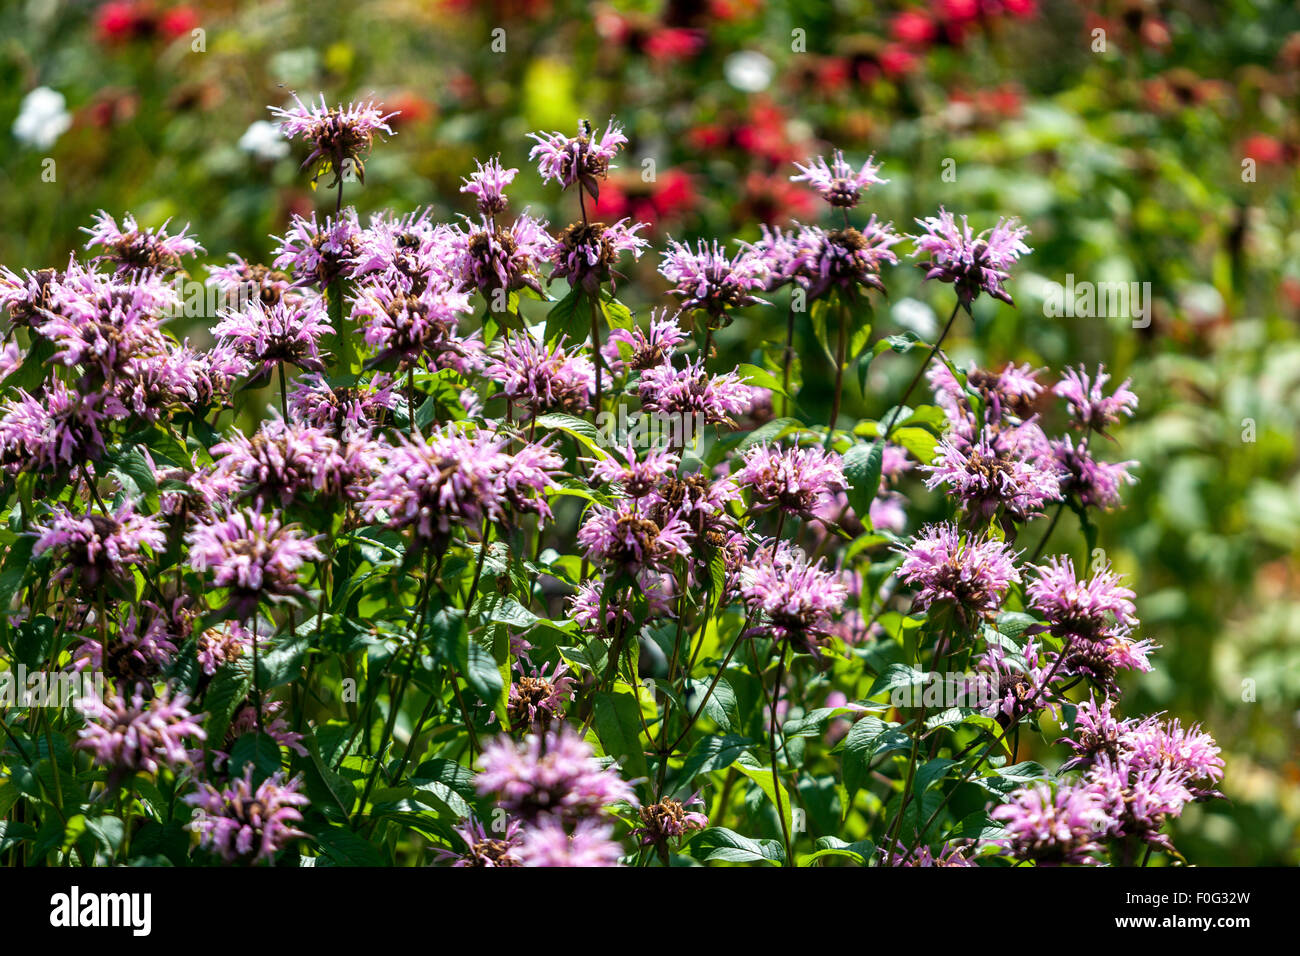 Monarda ' Beauty of Cobham 'garden flower bed, Bergamot Stock Photo